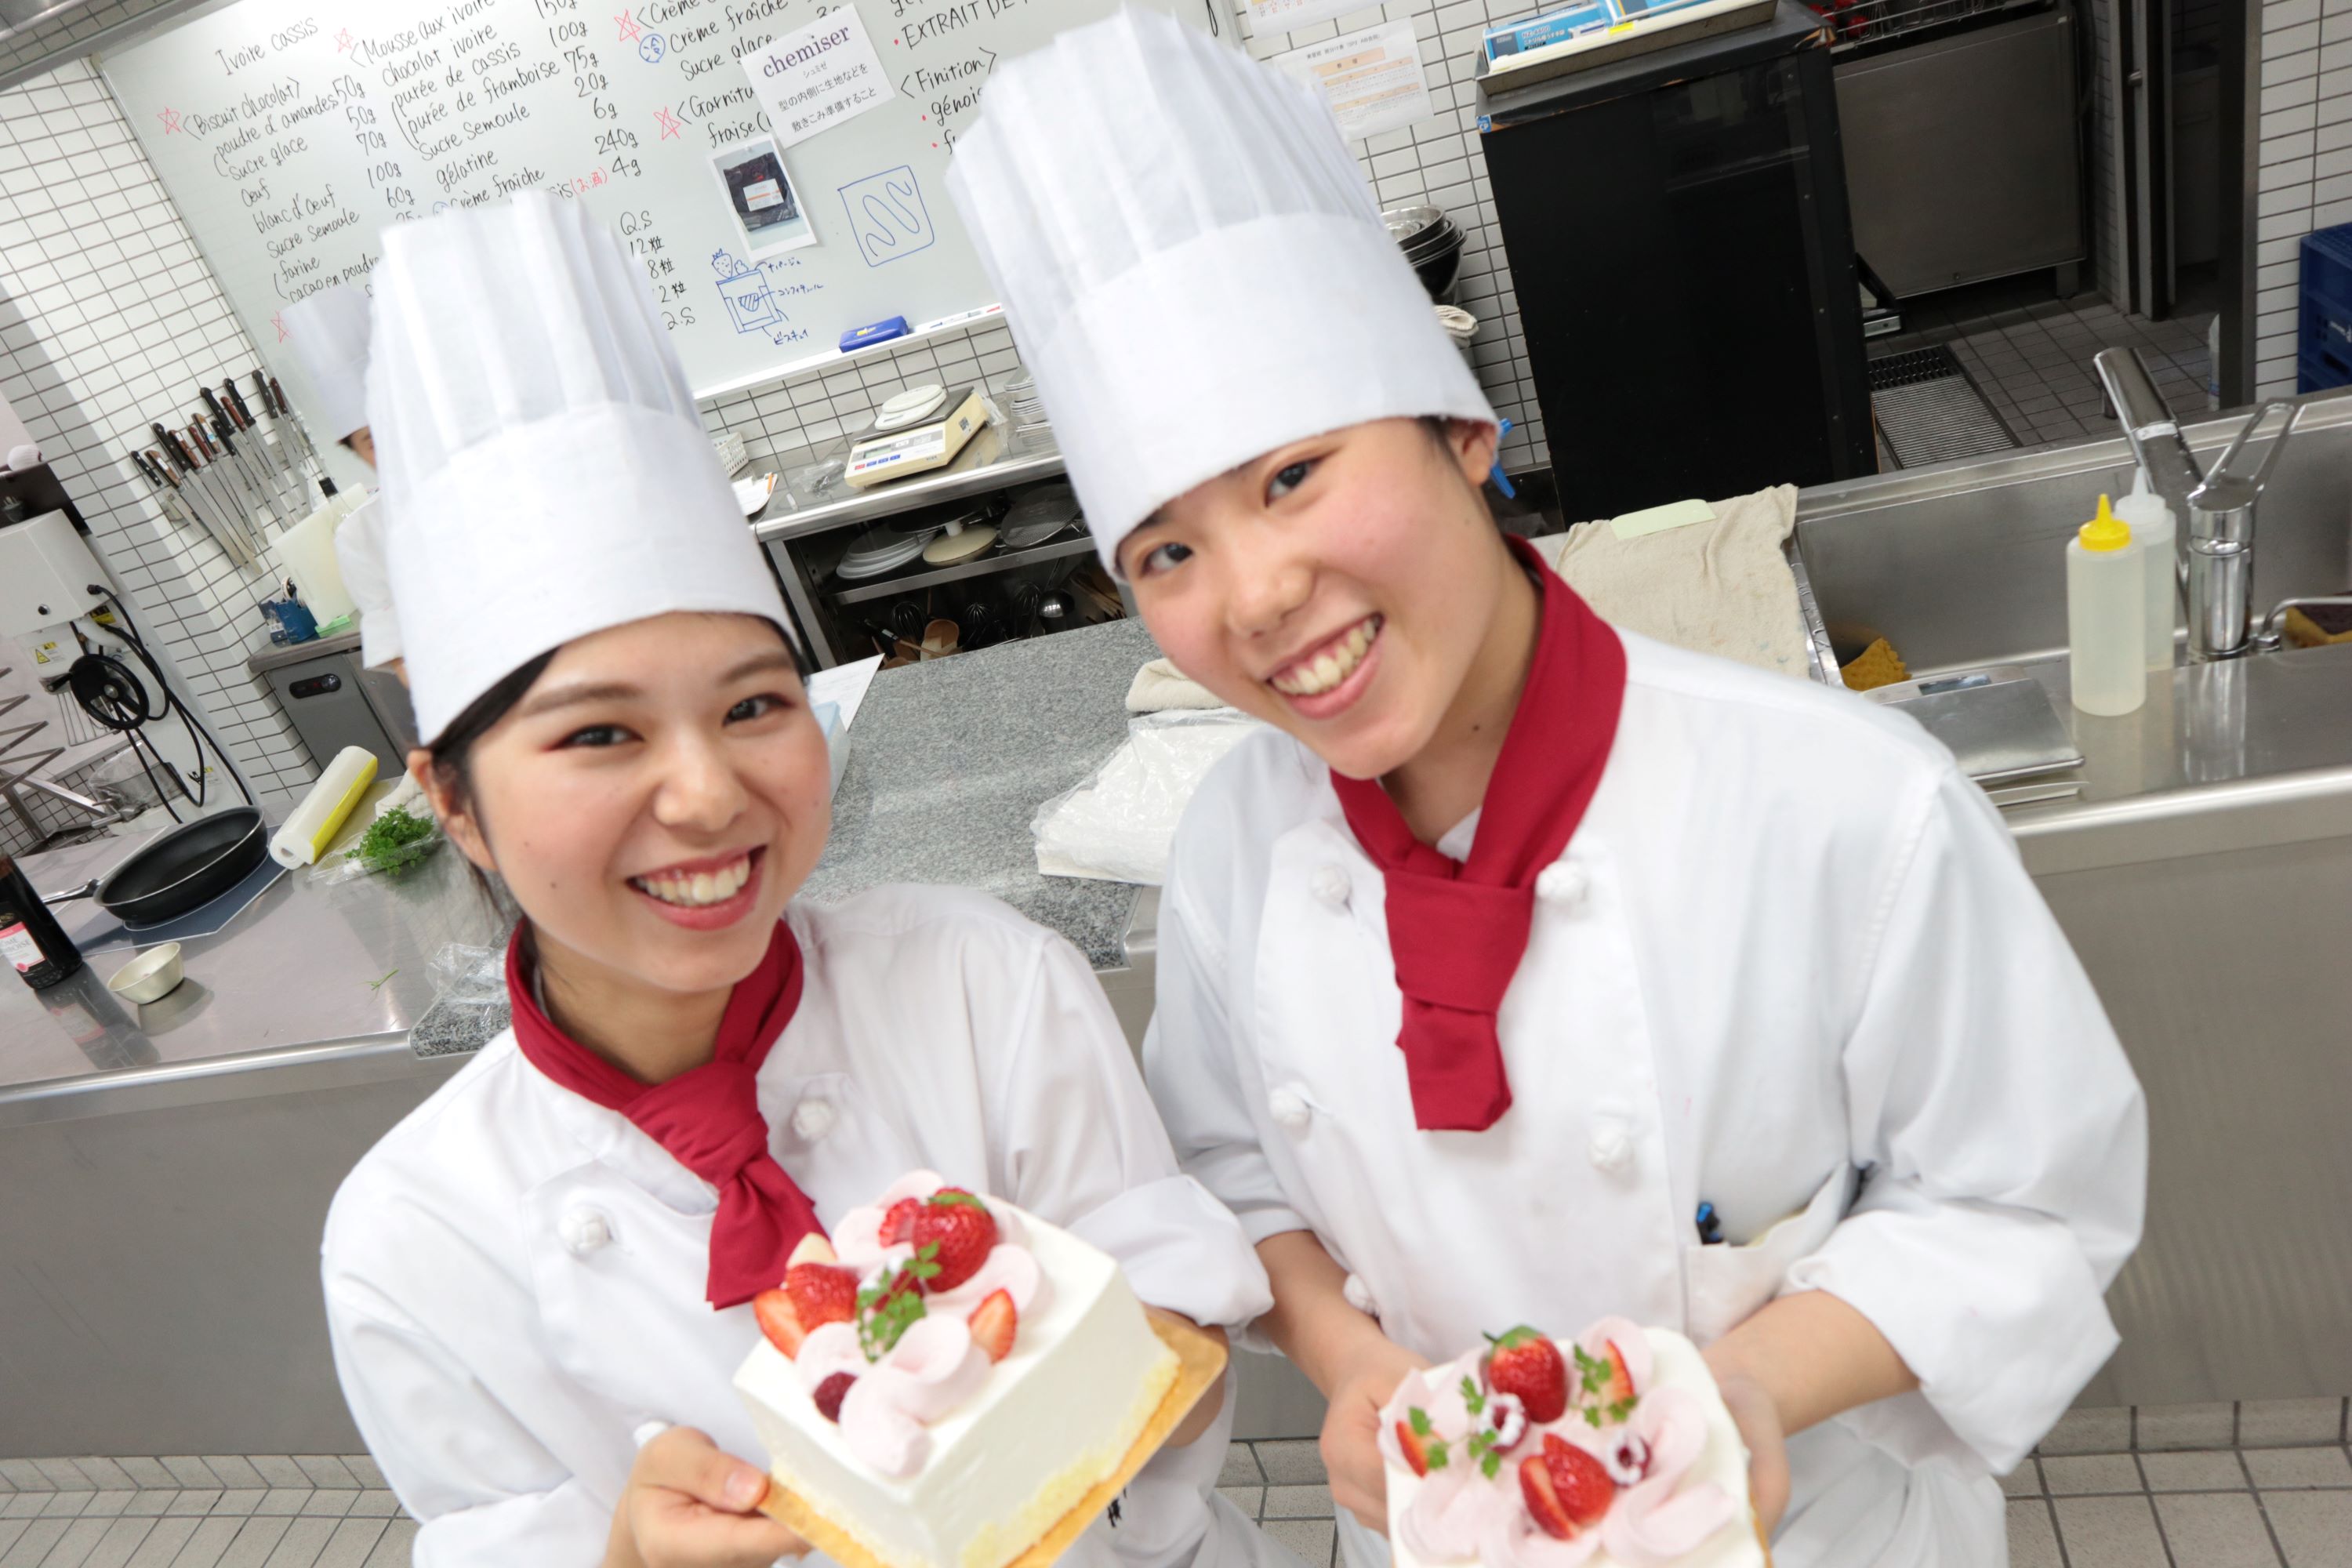 神戸国際調理製菓専門学校